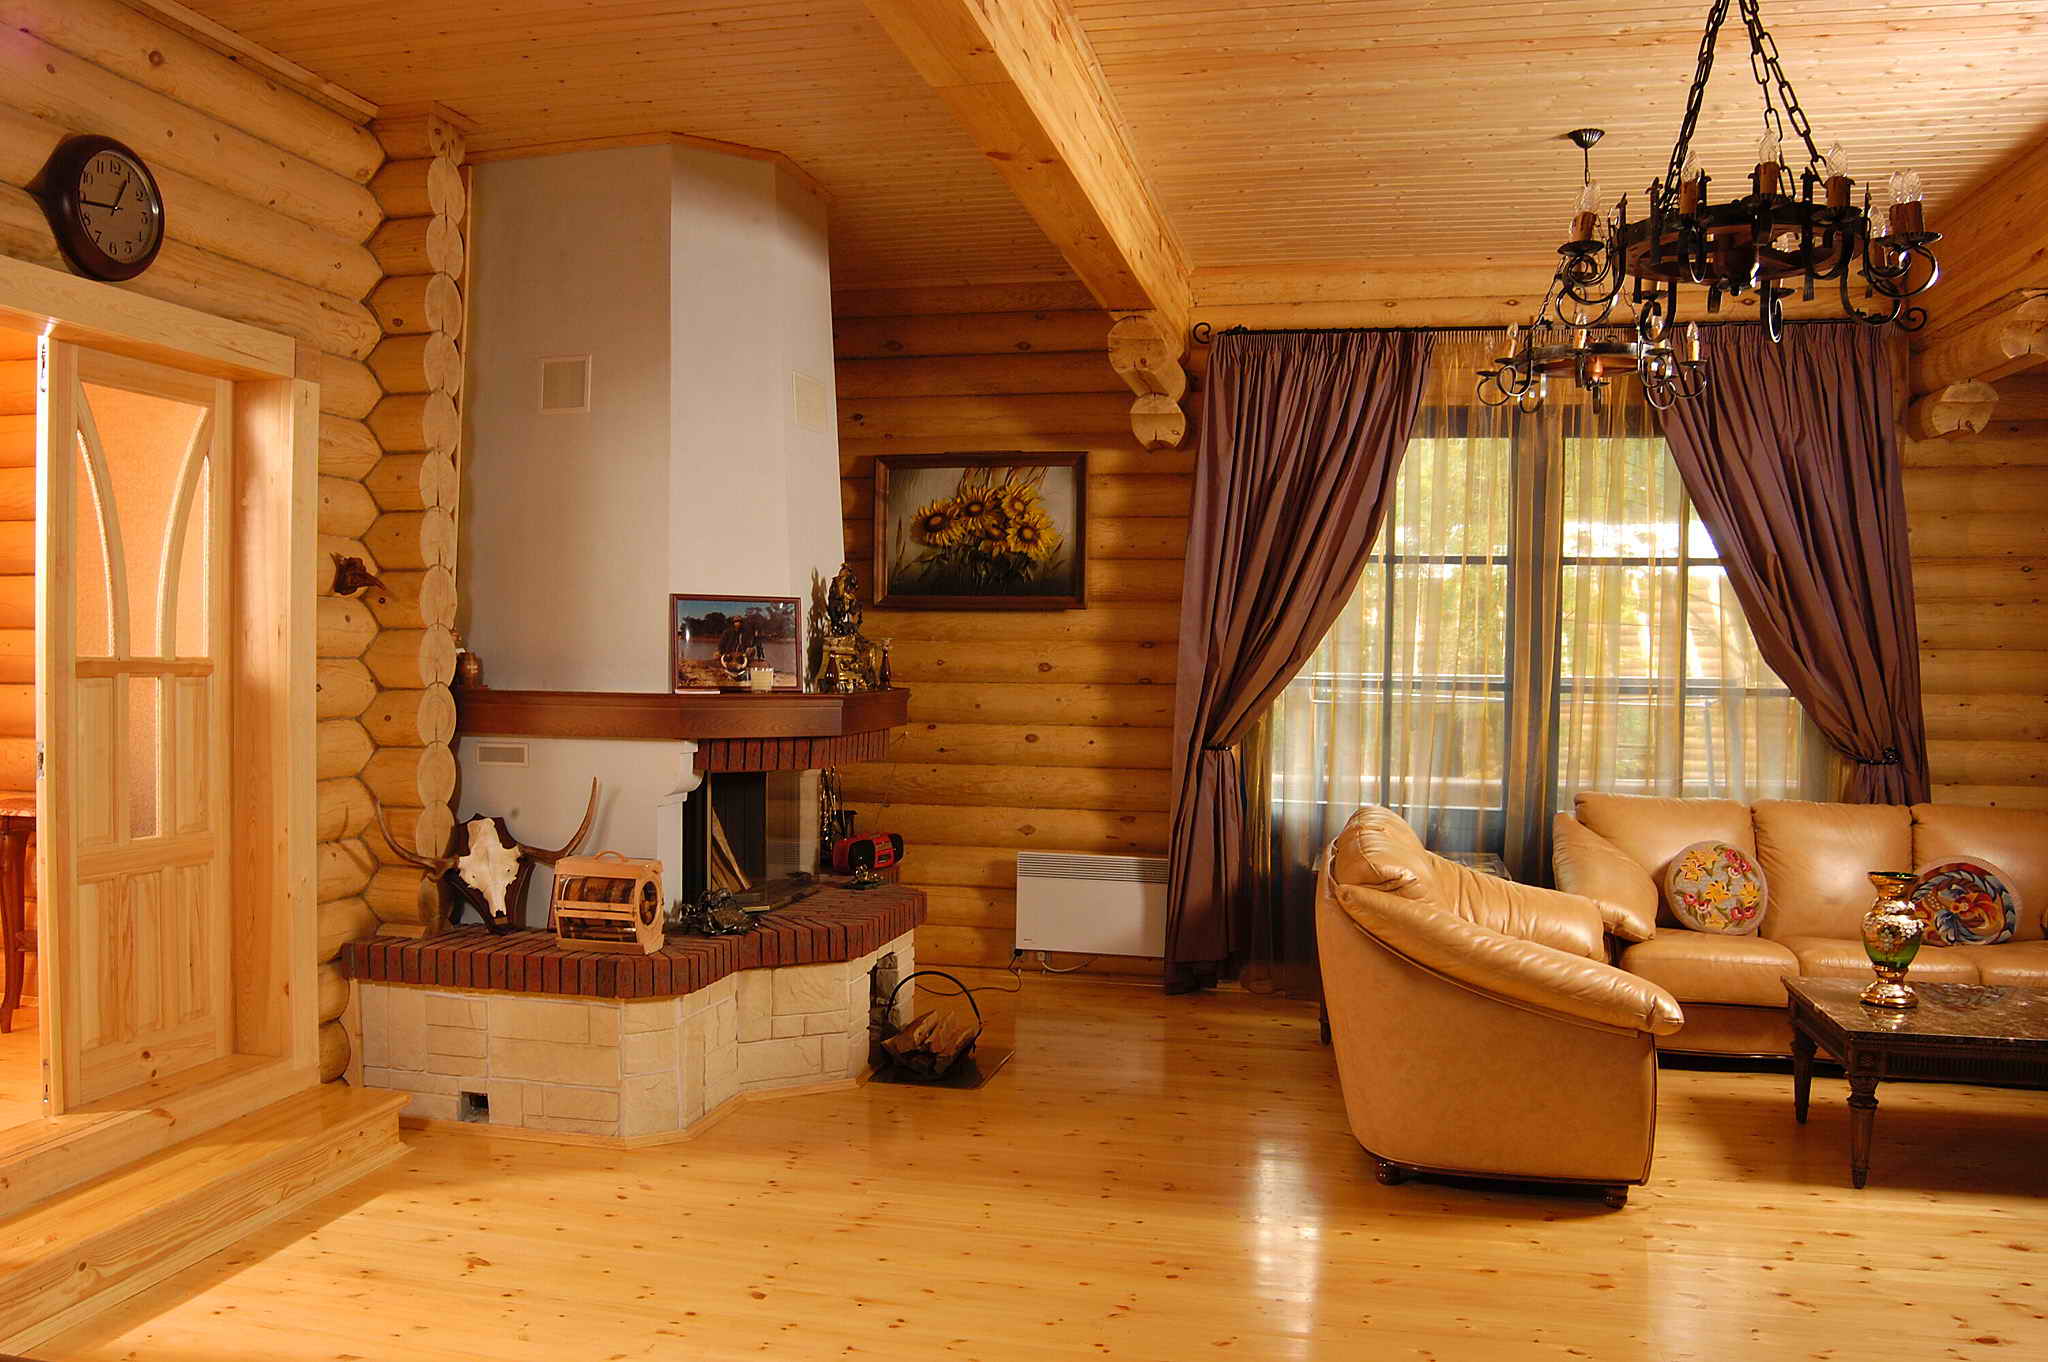 Внутренняя отделка деревянного дома - 95 фото примеров